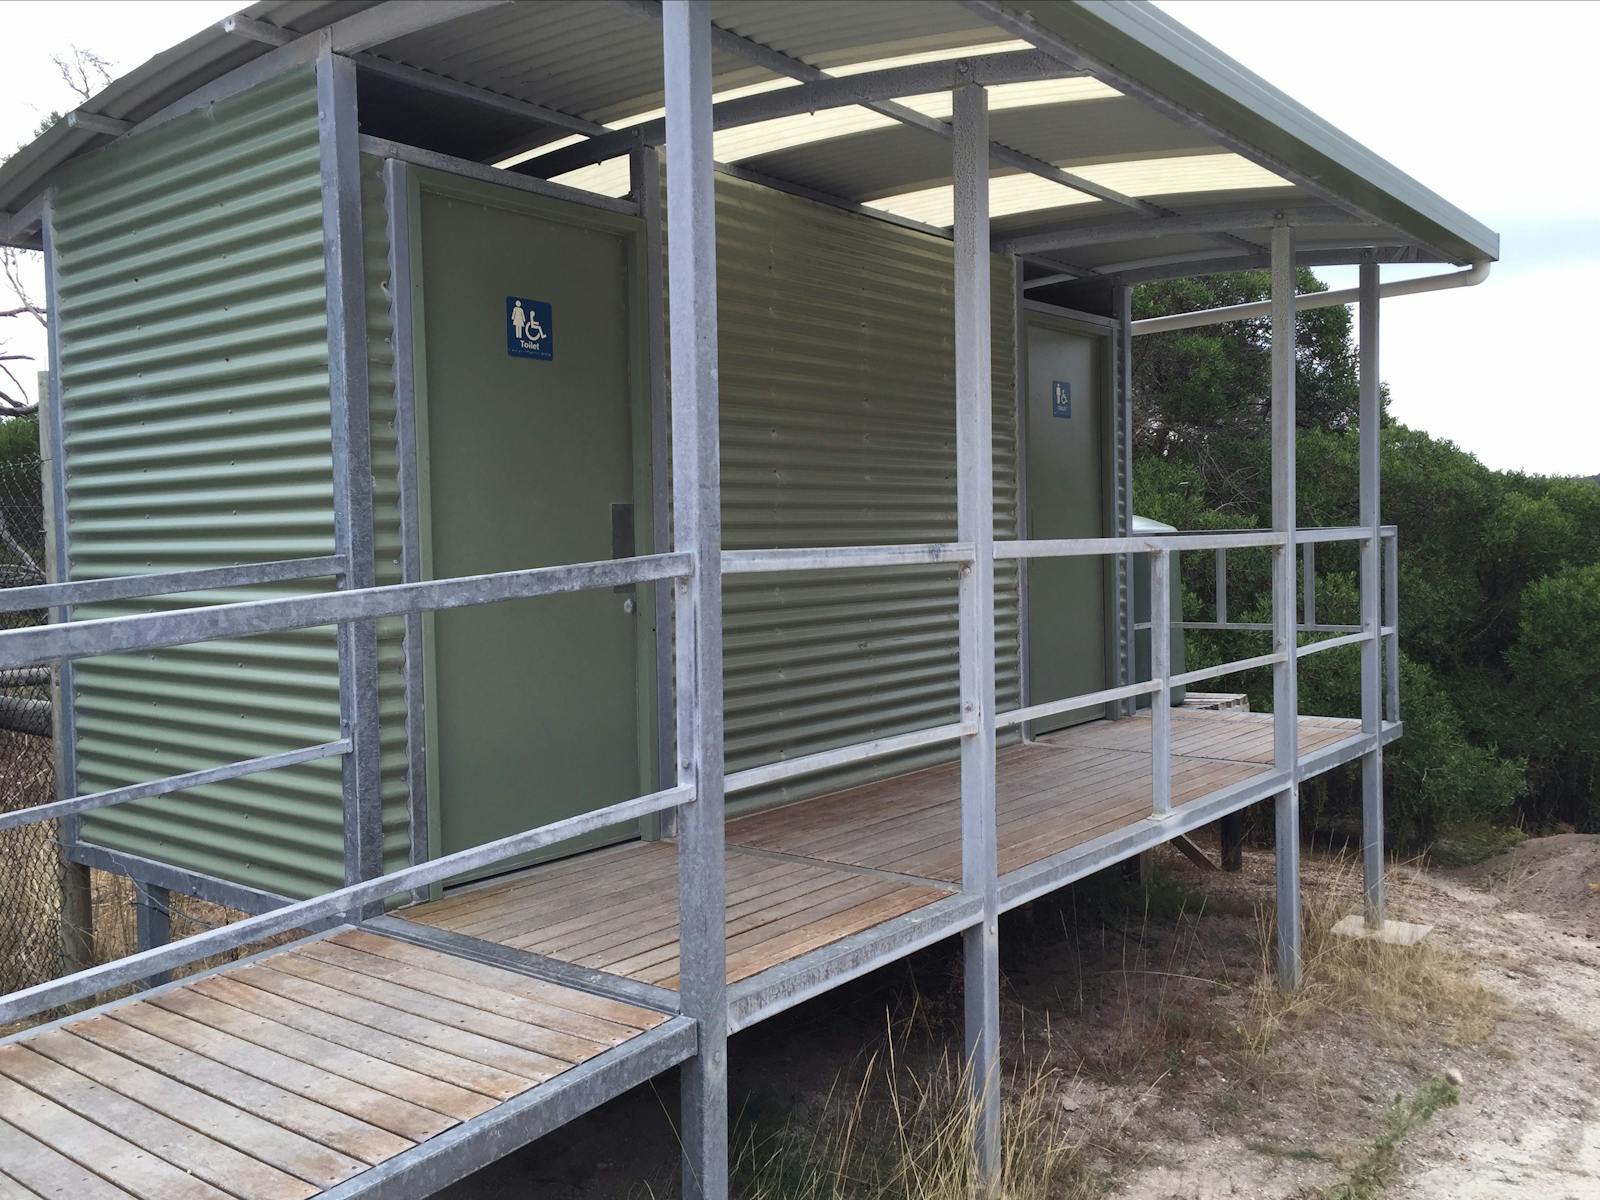 Facilities at Allport Beach Flinders Island Tasmania